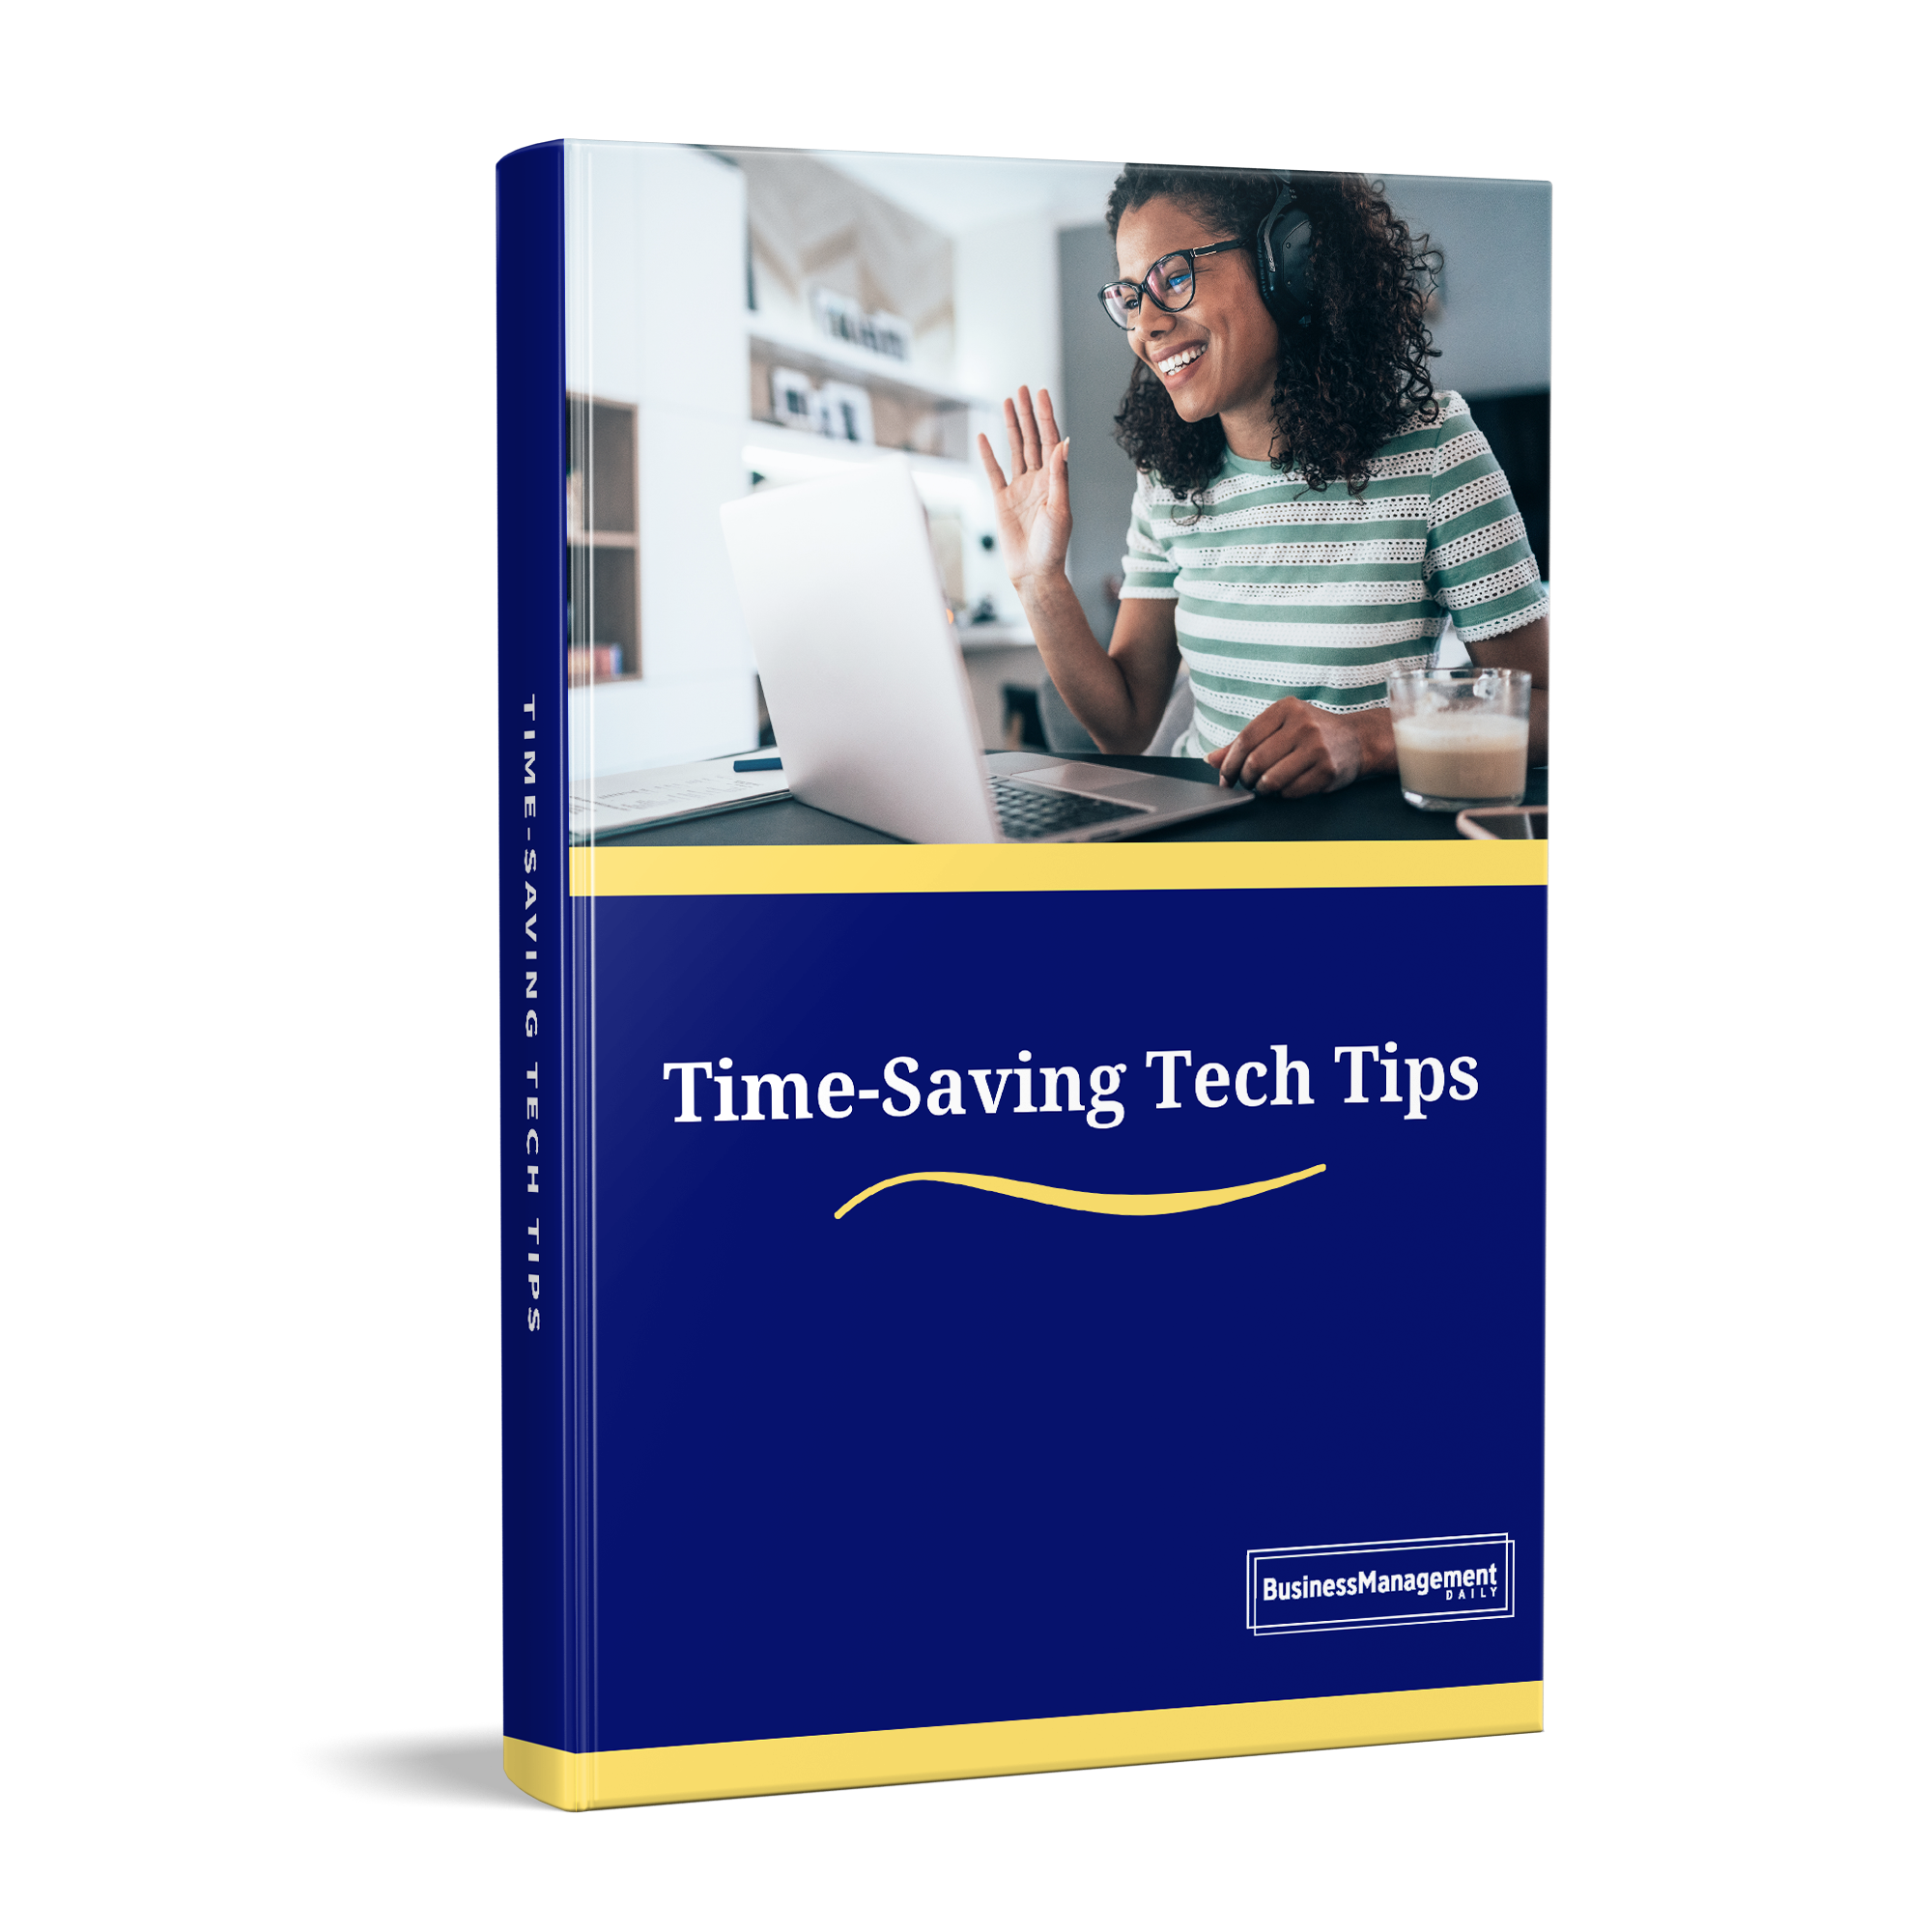 Time-Saving Tech Tips